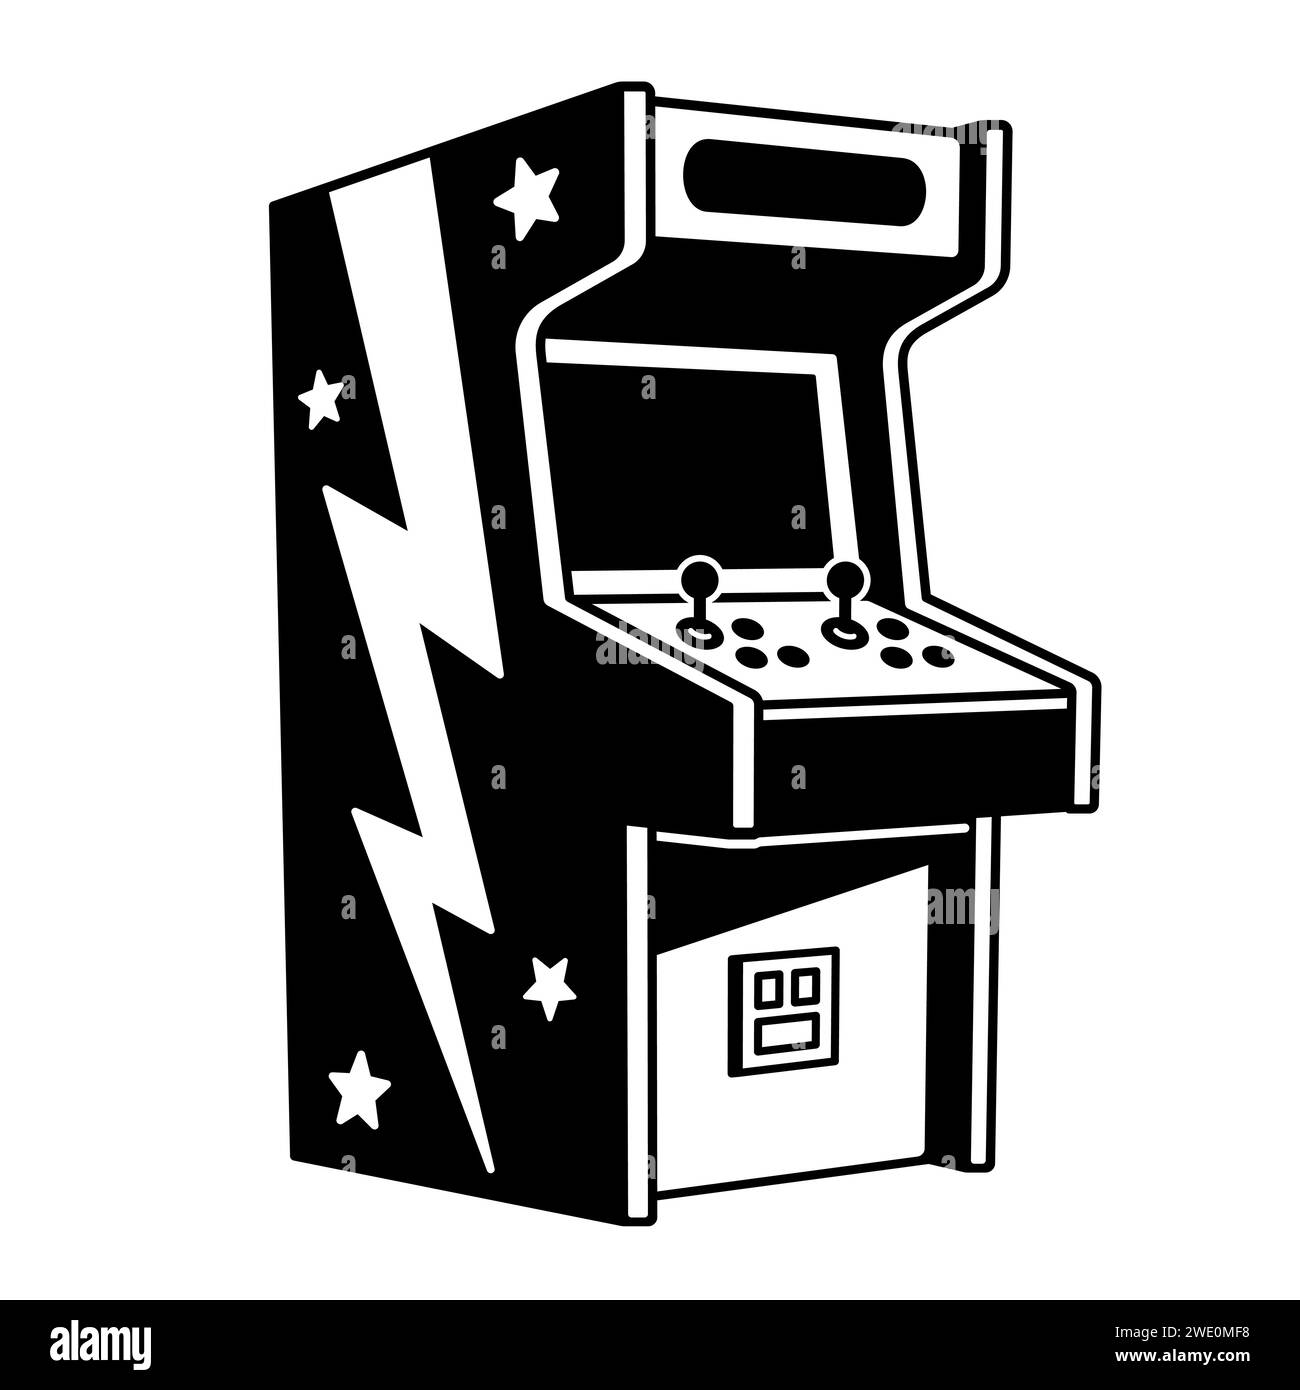 Macchina arcade classica per 2 giocatori, disegno dei cartoni animati in bianco e nero. Illustrazione vettoriale di videogiochi d'epoca. Illustrazione Vettoriale